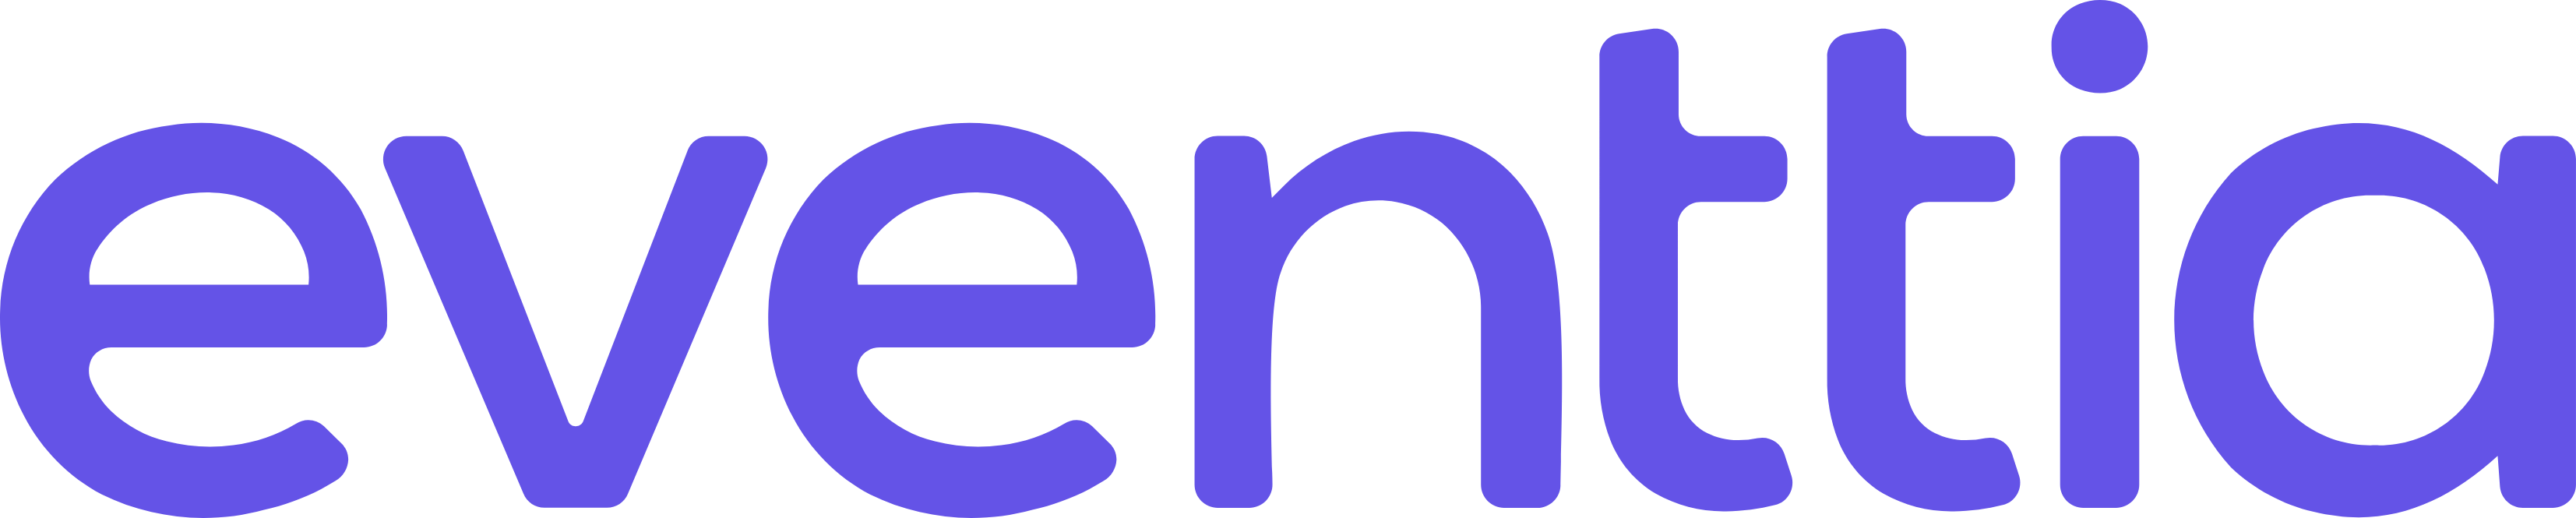 Eventtia logo 